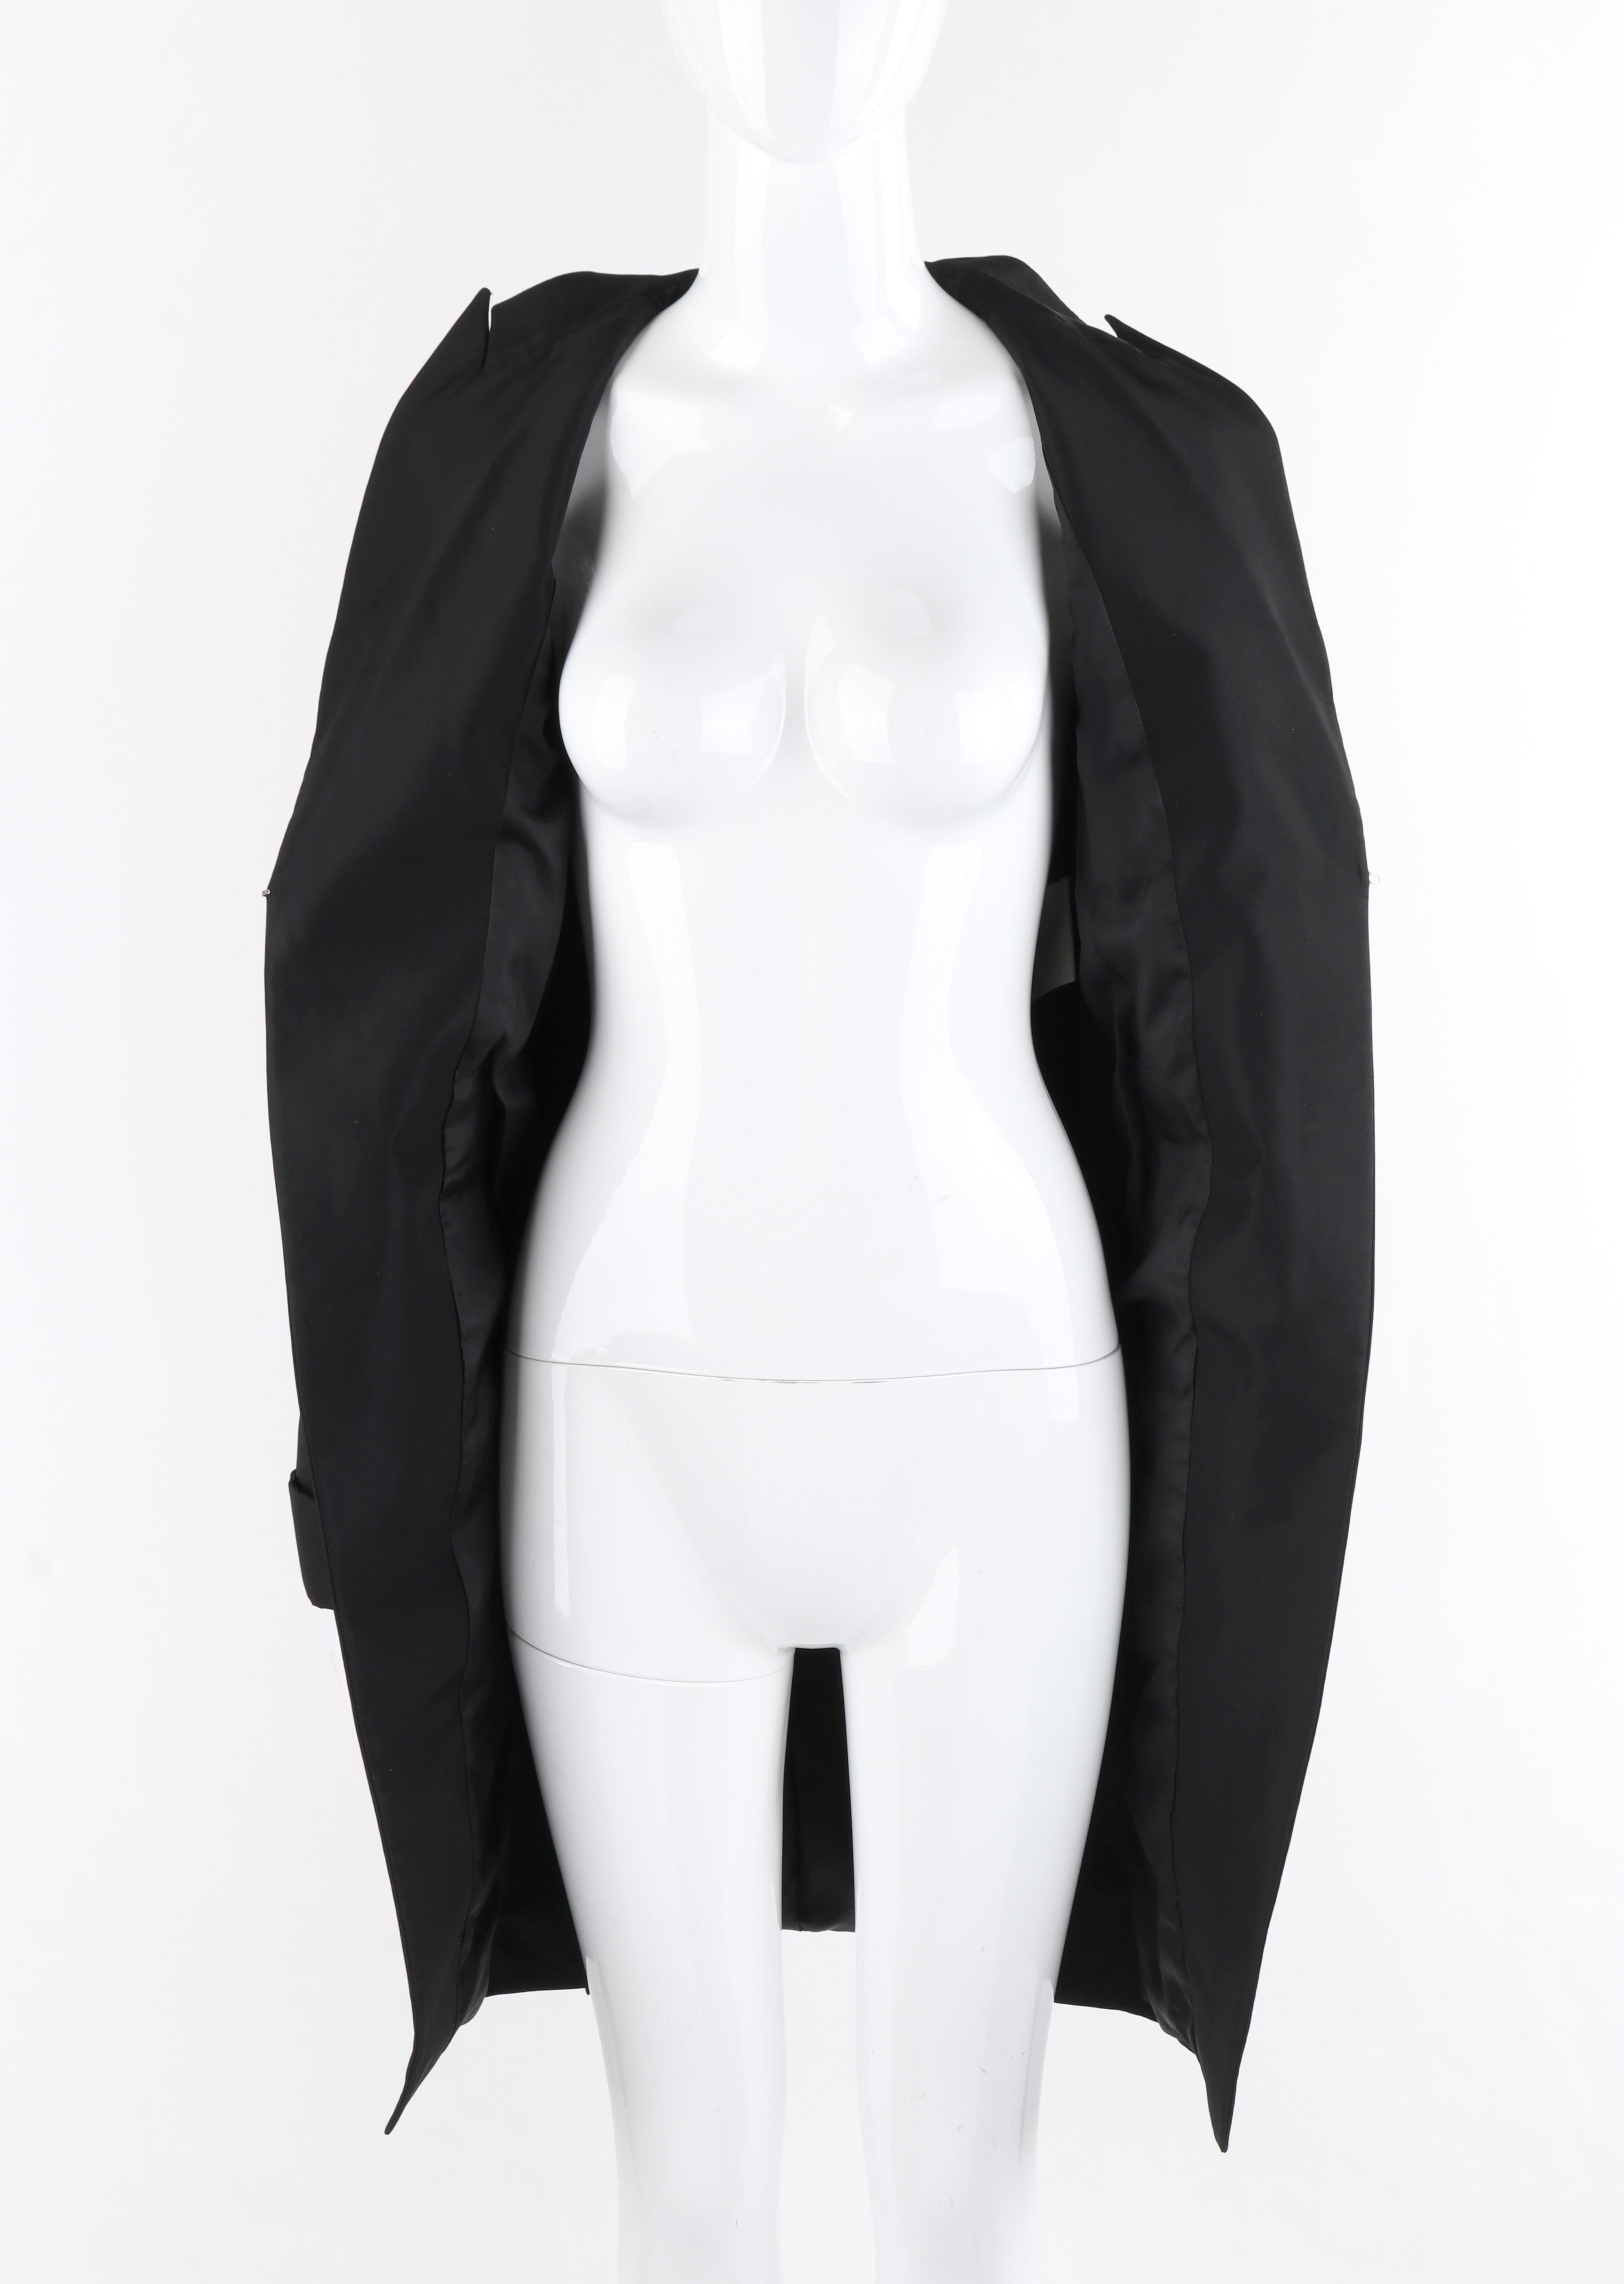 Women's ALEXANDER McQUEEN S/S 1997 “La Poupee” Black Single Closure Cutaway Dress Jacket For Sale